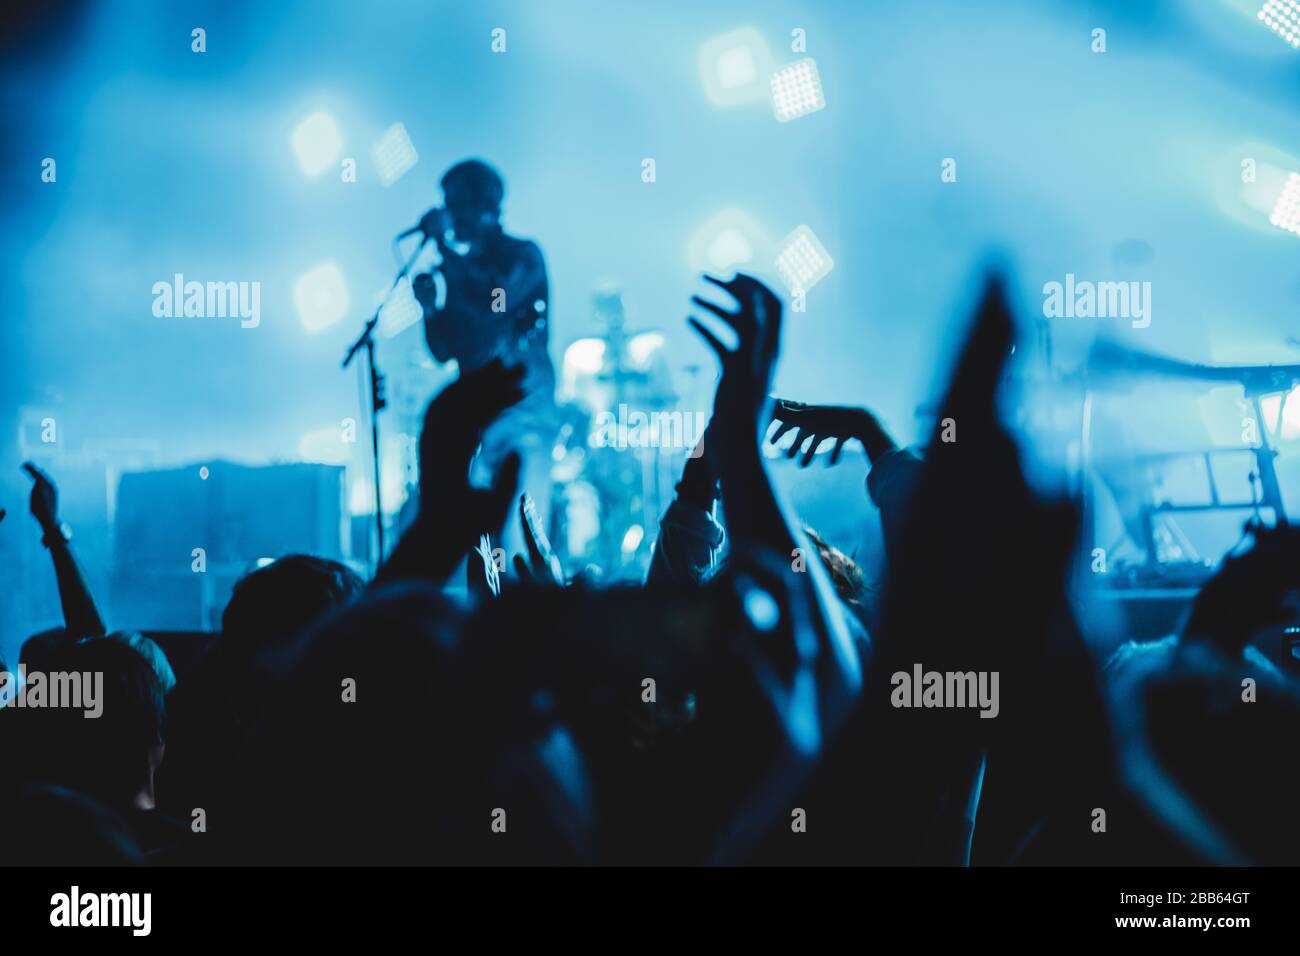 Konzertsilhouetten bei einem Konzert sind Menschen sichtbar, von Bühnenleuchten hinterleuchtet, erhöhte Hände. Stockfoto